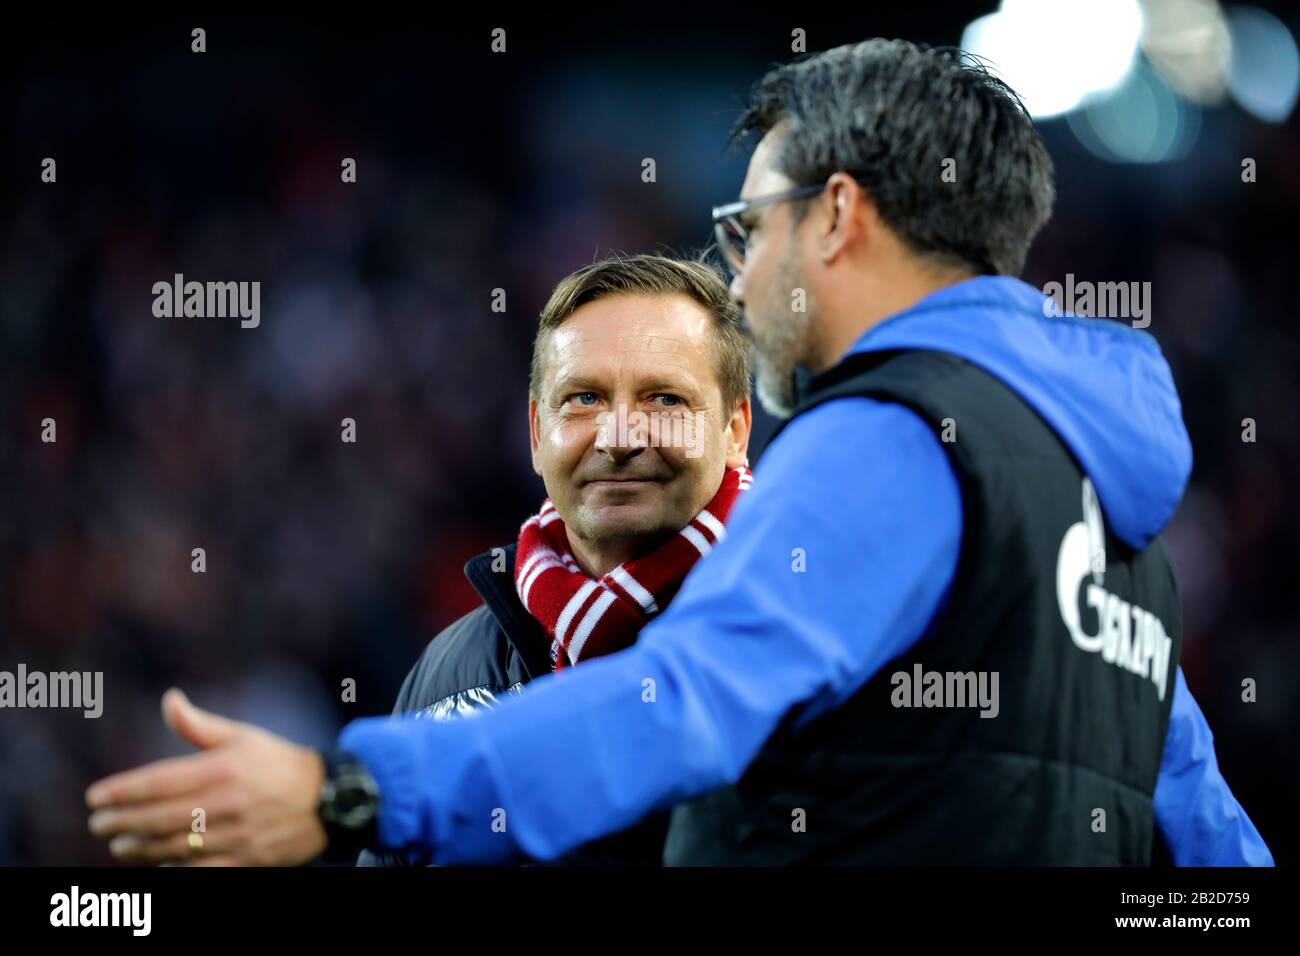 Kšln, Germania, RheinEnergieStadion, 29th Feb 2020: Il manager Horst Heldt (L) di Koeln parla con David Wagner di Schalke durante il primo Bundesliga Mat Foto Stock